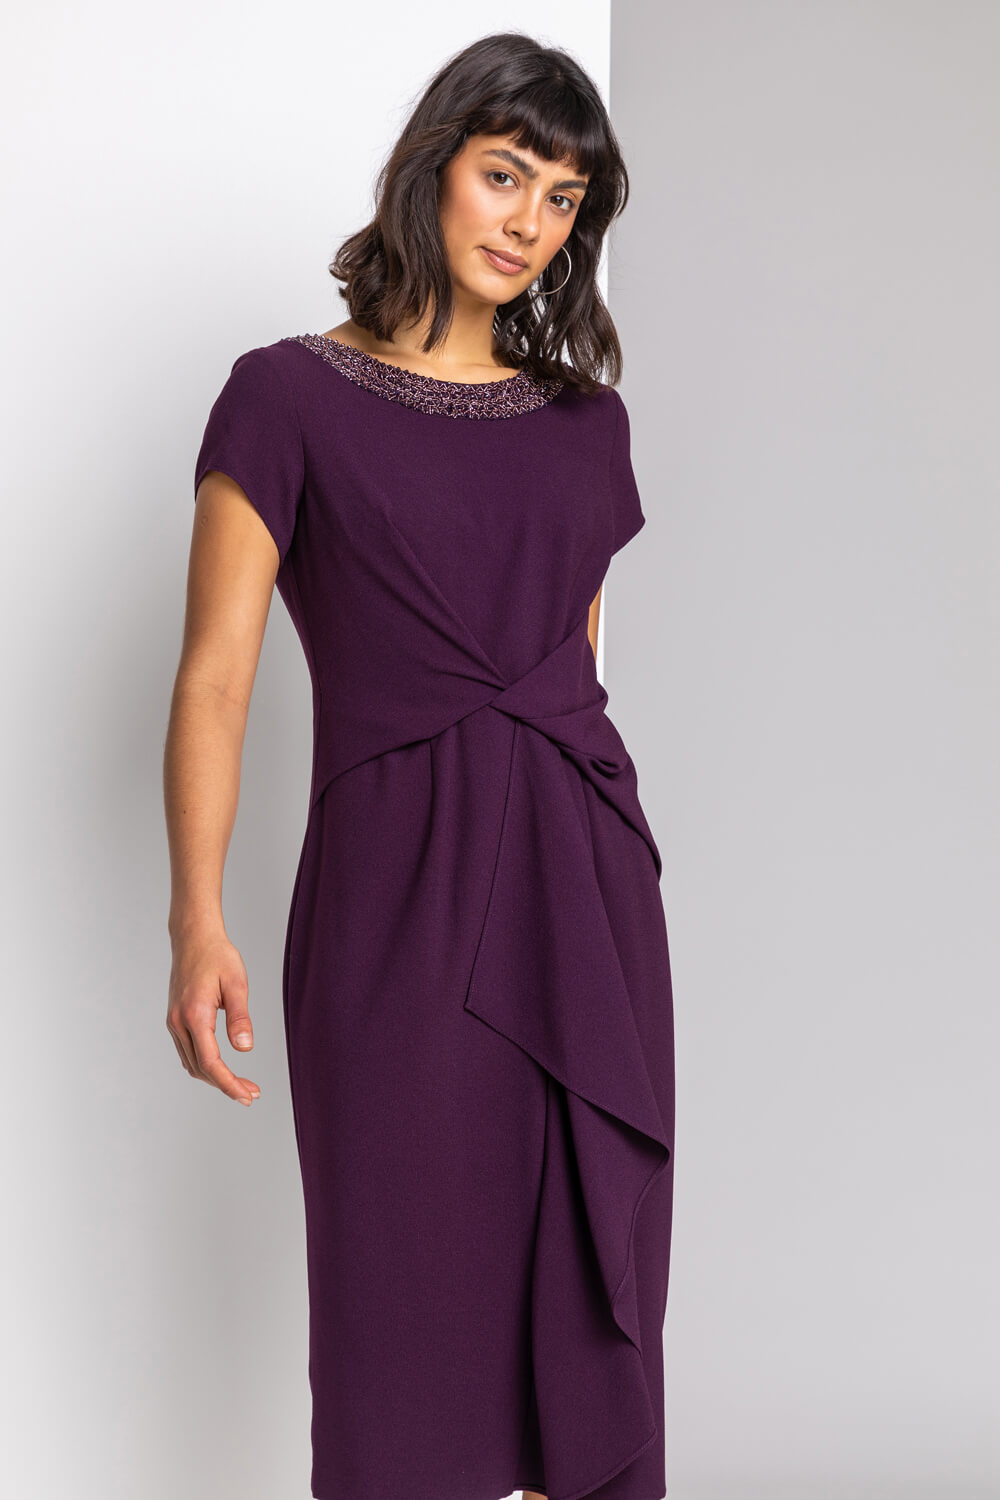 Embellished Twist Waist Midi Dress in Plum - Roman Originals UK